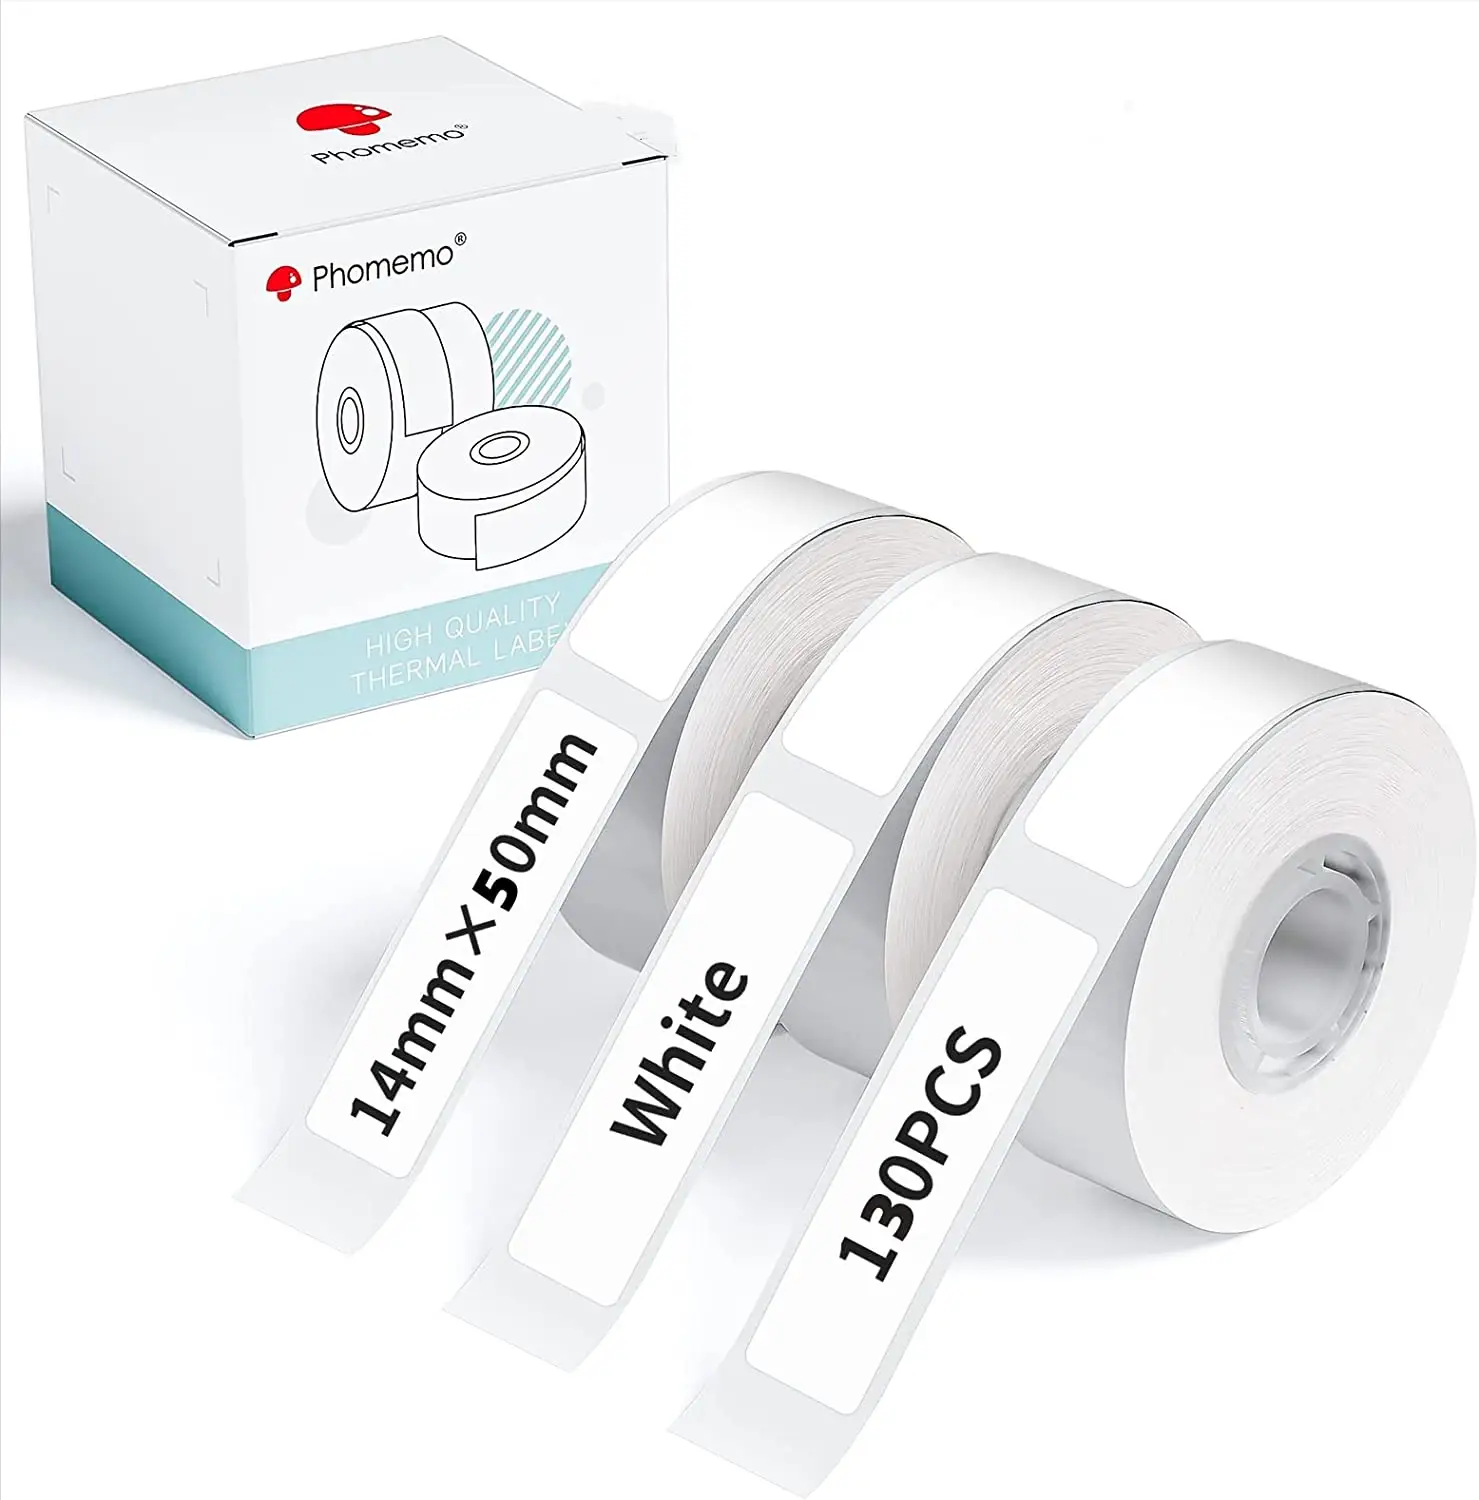 PhomemoQ30 Serie drei hitze beständiges selbst klebendes Etiketten drucker papier